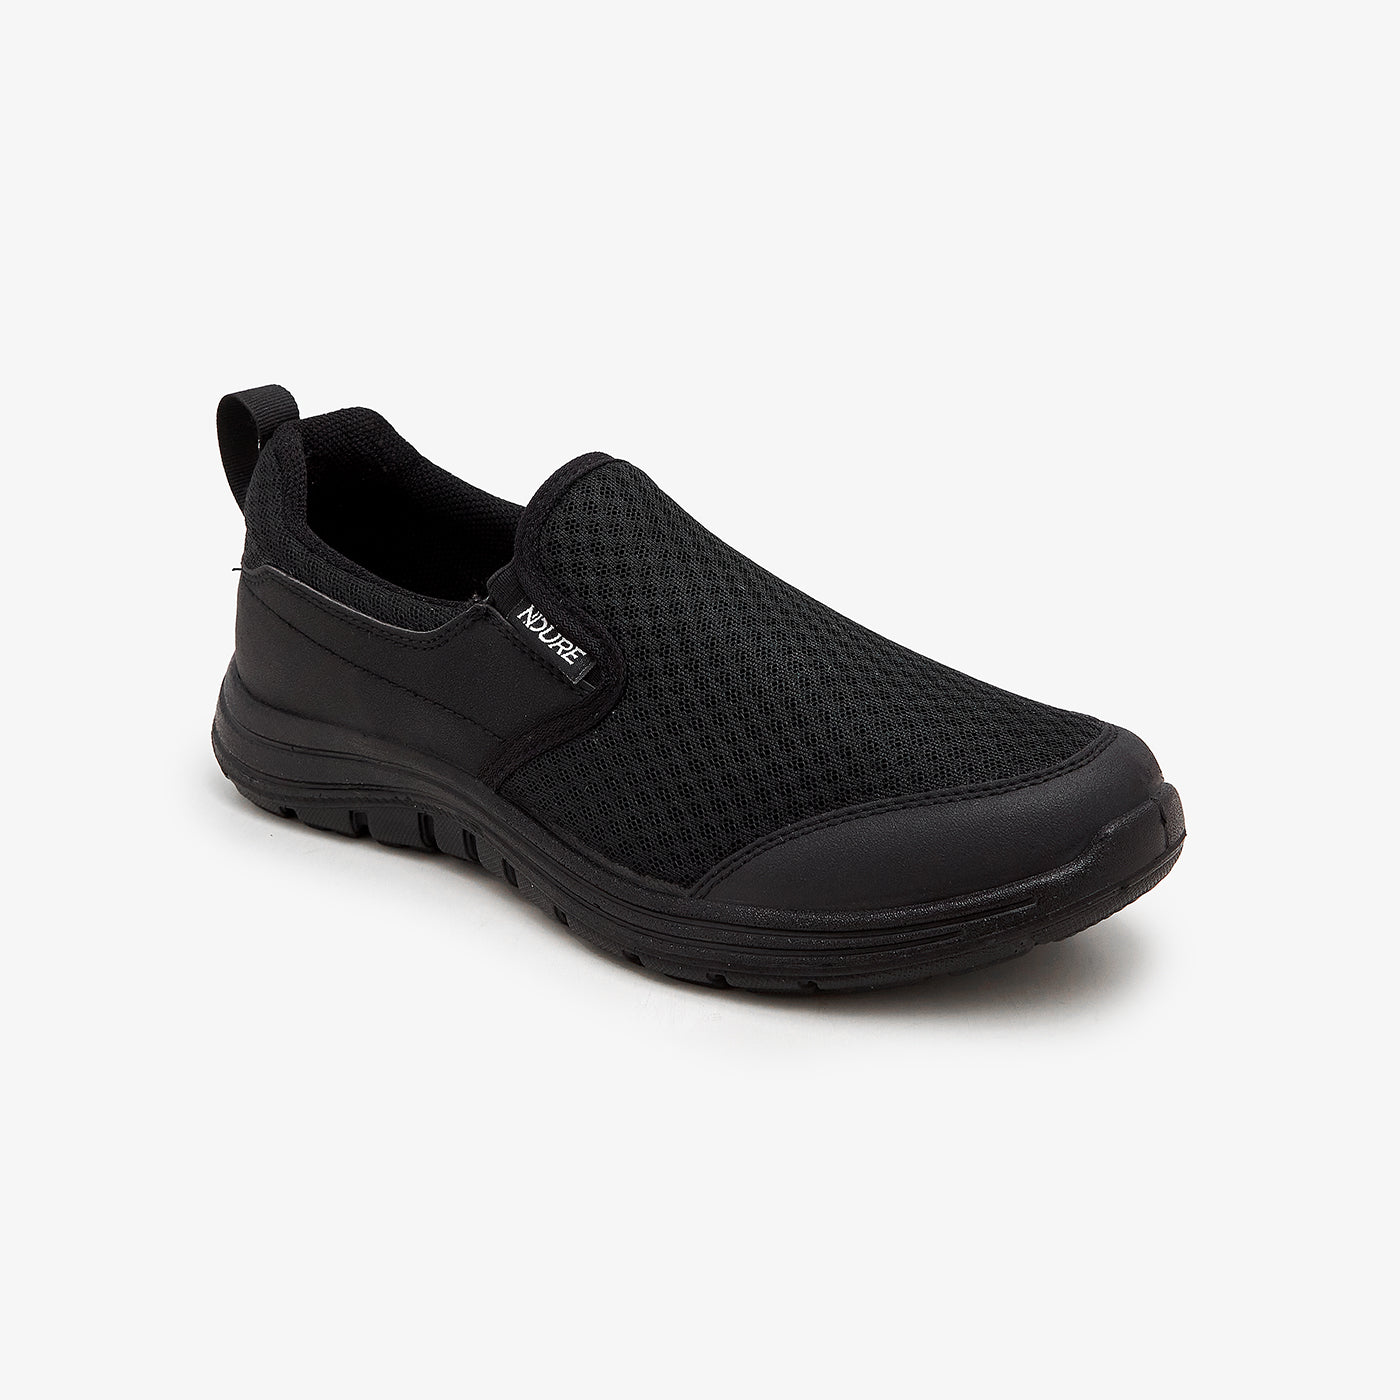 Buy Men Loafers & Slip-Ons - Slip-On Sports Shoes for Men M-PR-VEL-0014 ...